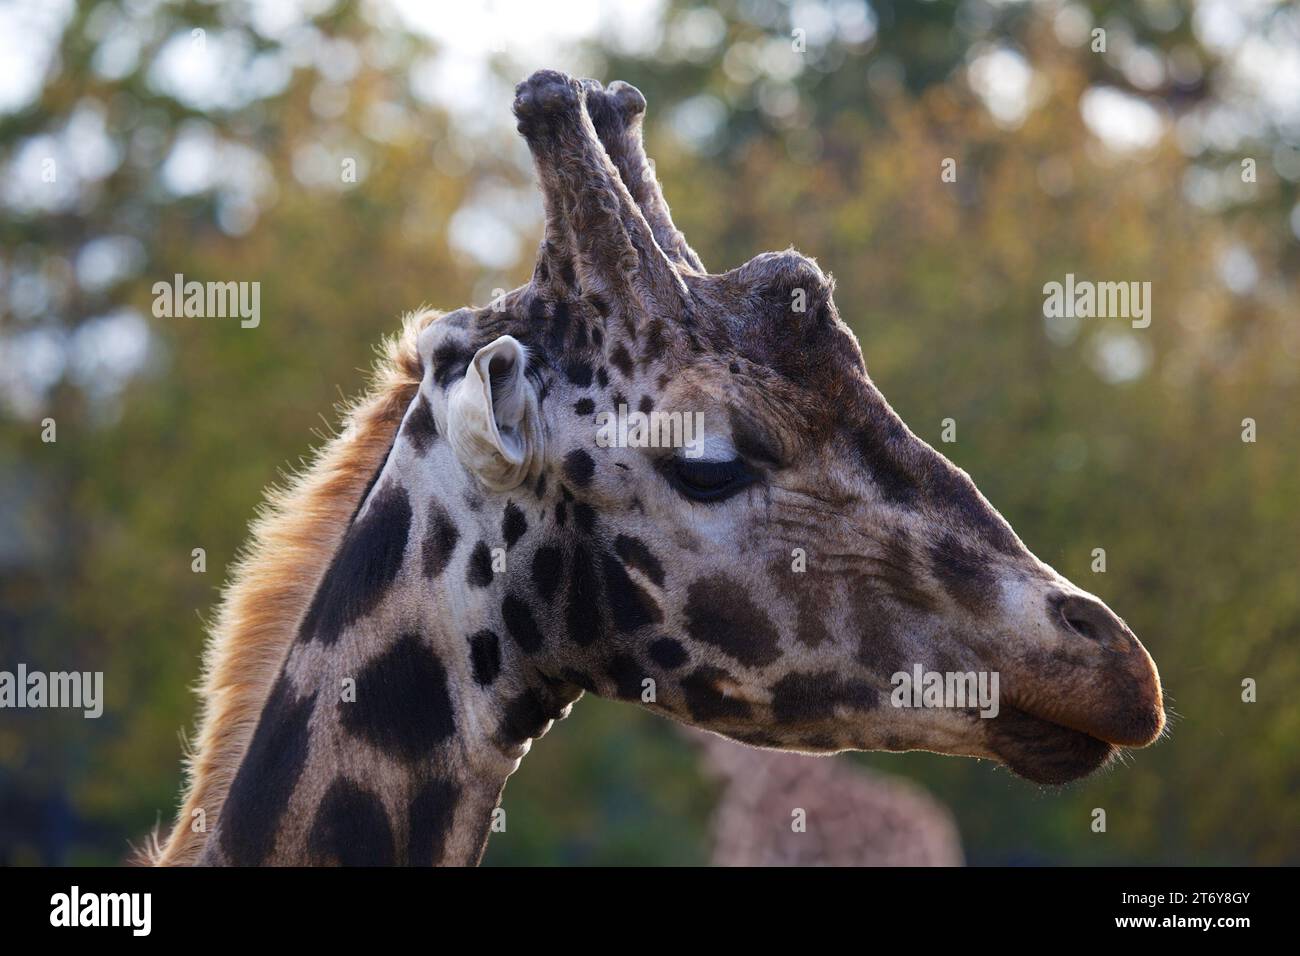 Anmutige Giraffe (Giraffa camelopardalis), gefangen in ihrem afrikanischen Savannenhabitat. Bekannt für seinen legendären langen Ausschnitt und den charakteristischen gepunkteten Mantel. Stockfoto